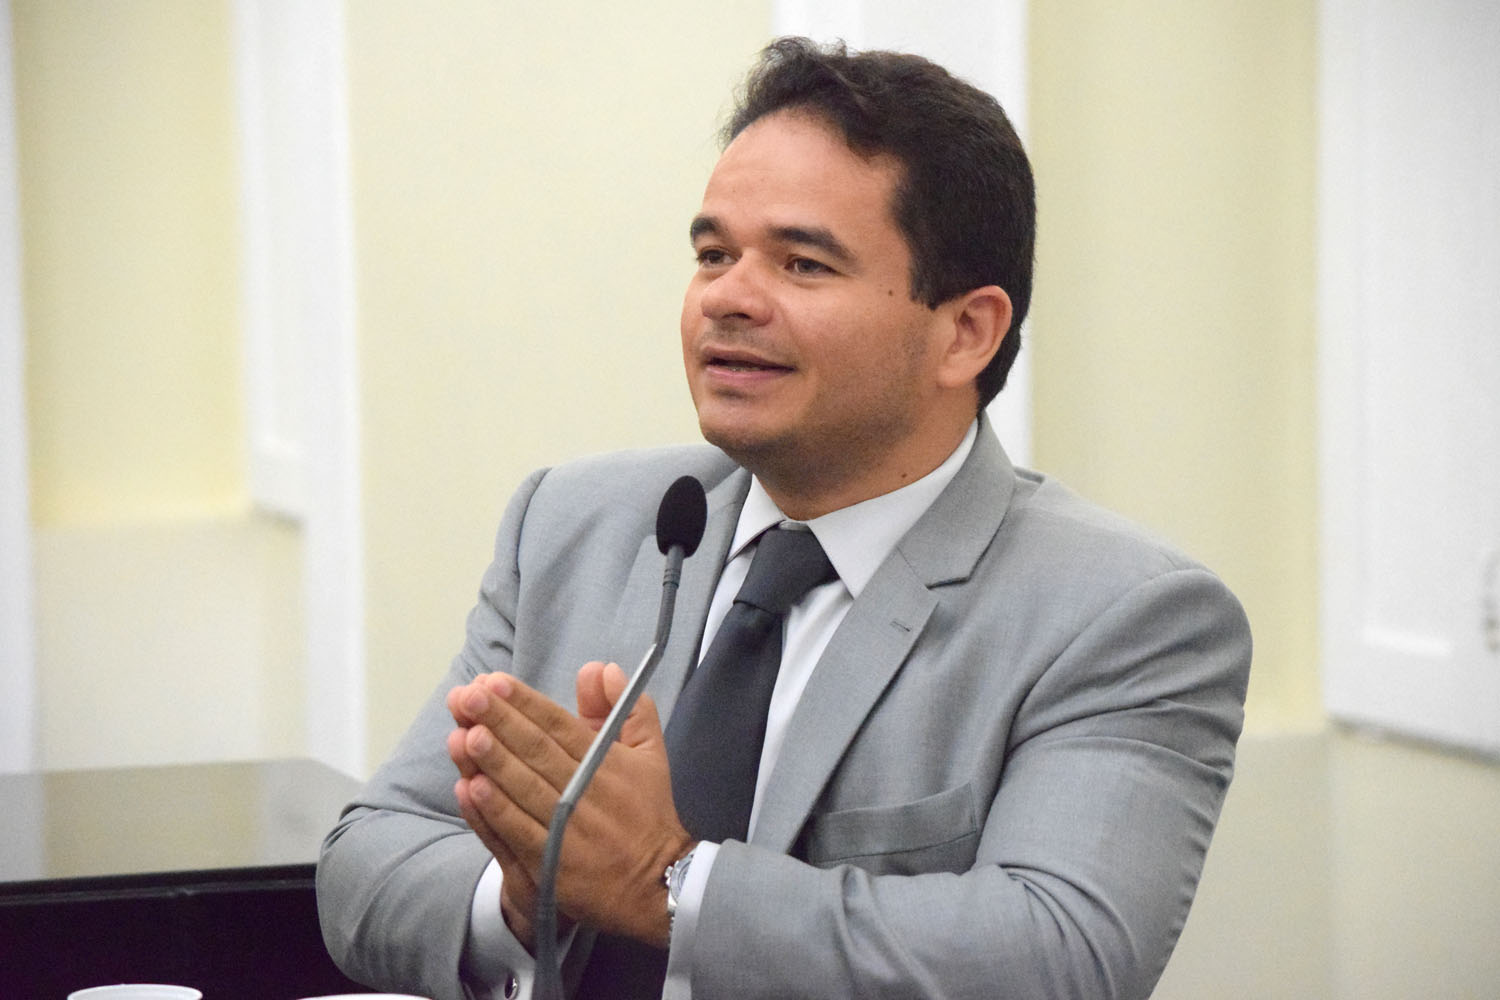 Marcelo Victor diz que vai trabalhar prol da governabilidade